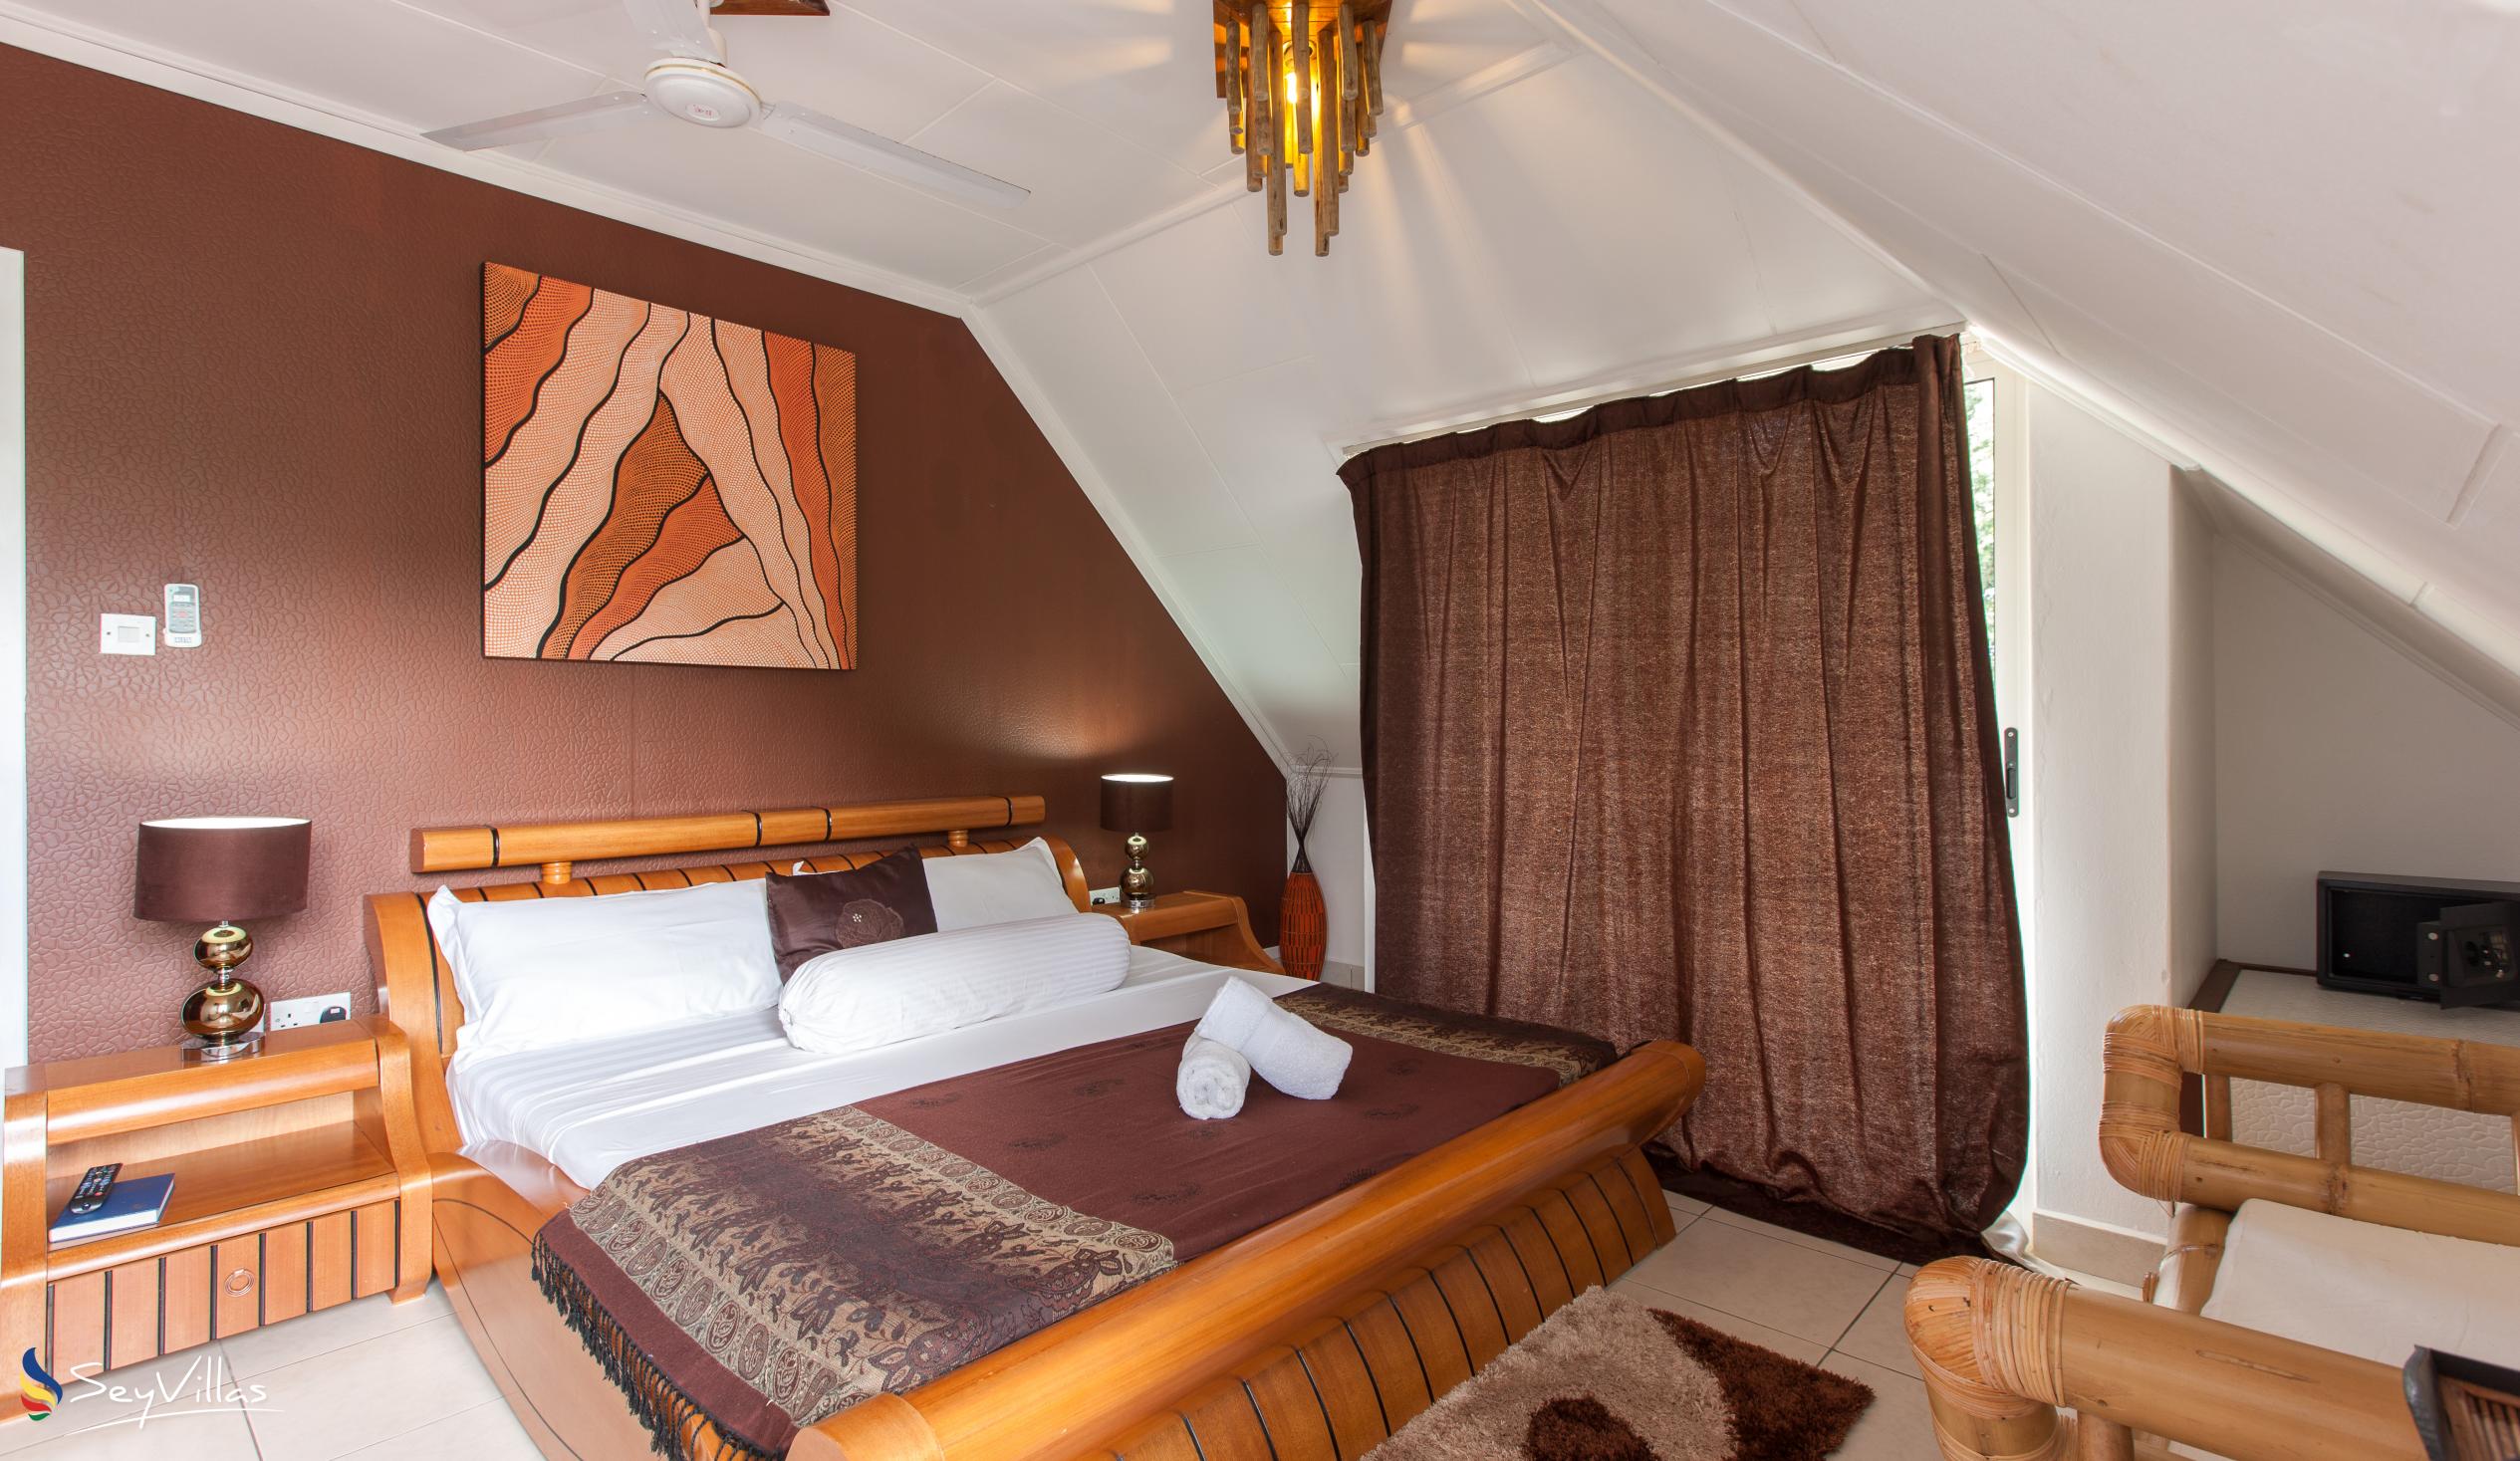 Photo 26: Villa Authentique - Standard Room - La Digue (Seychelles)